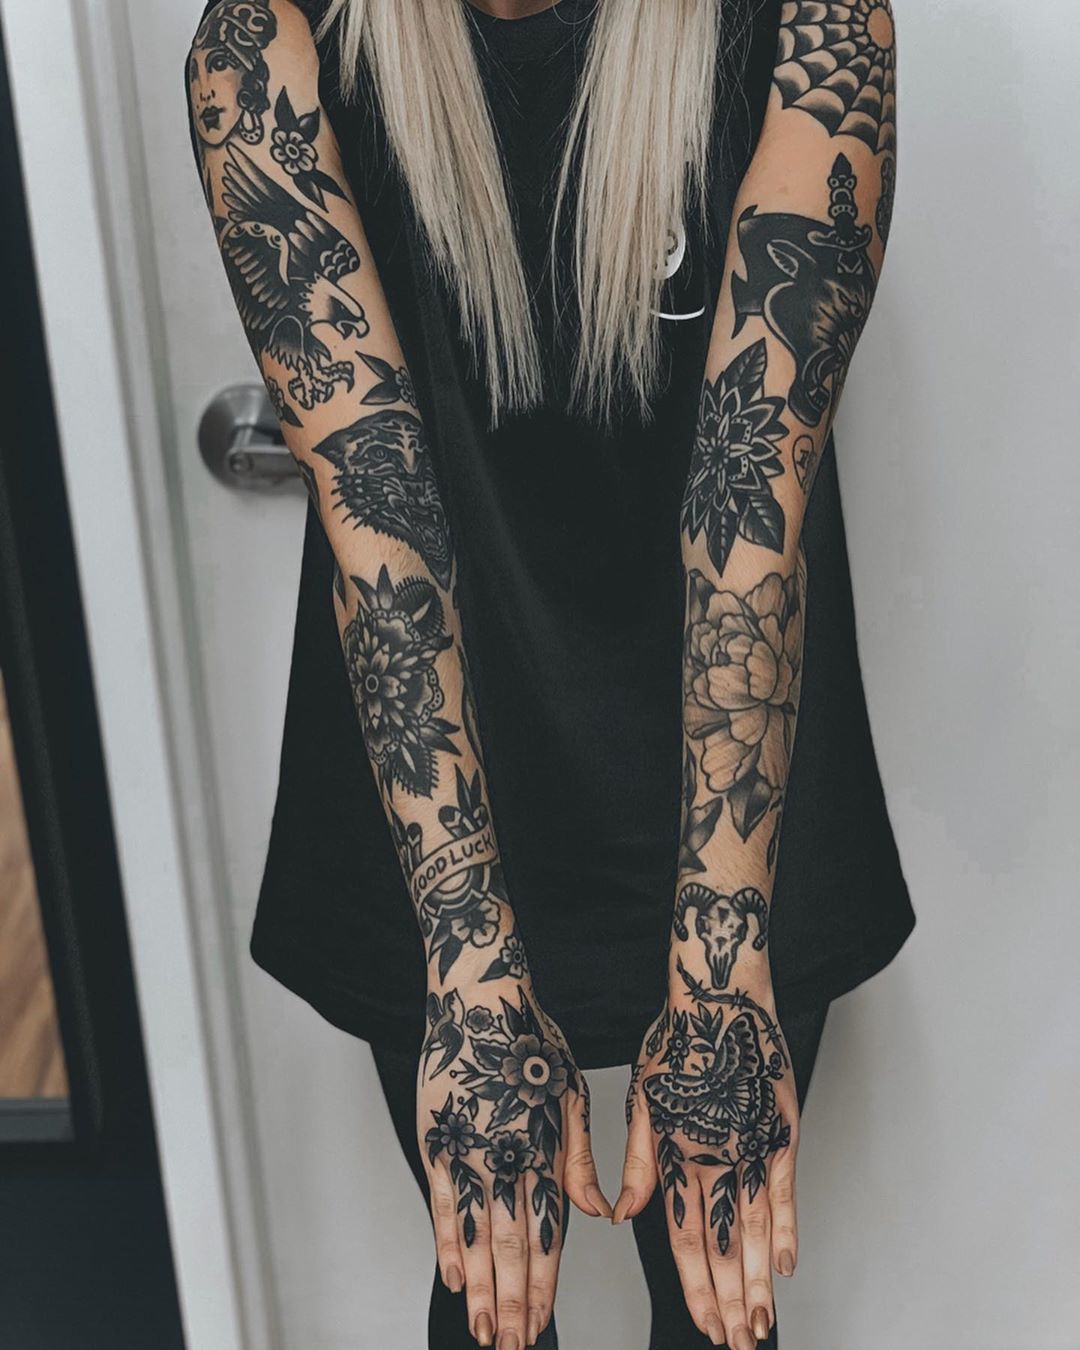 Tatuagens para fechar o braço 80 ideias que vão te ajudar